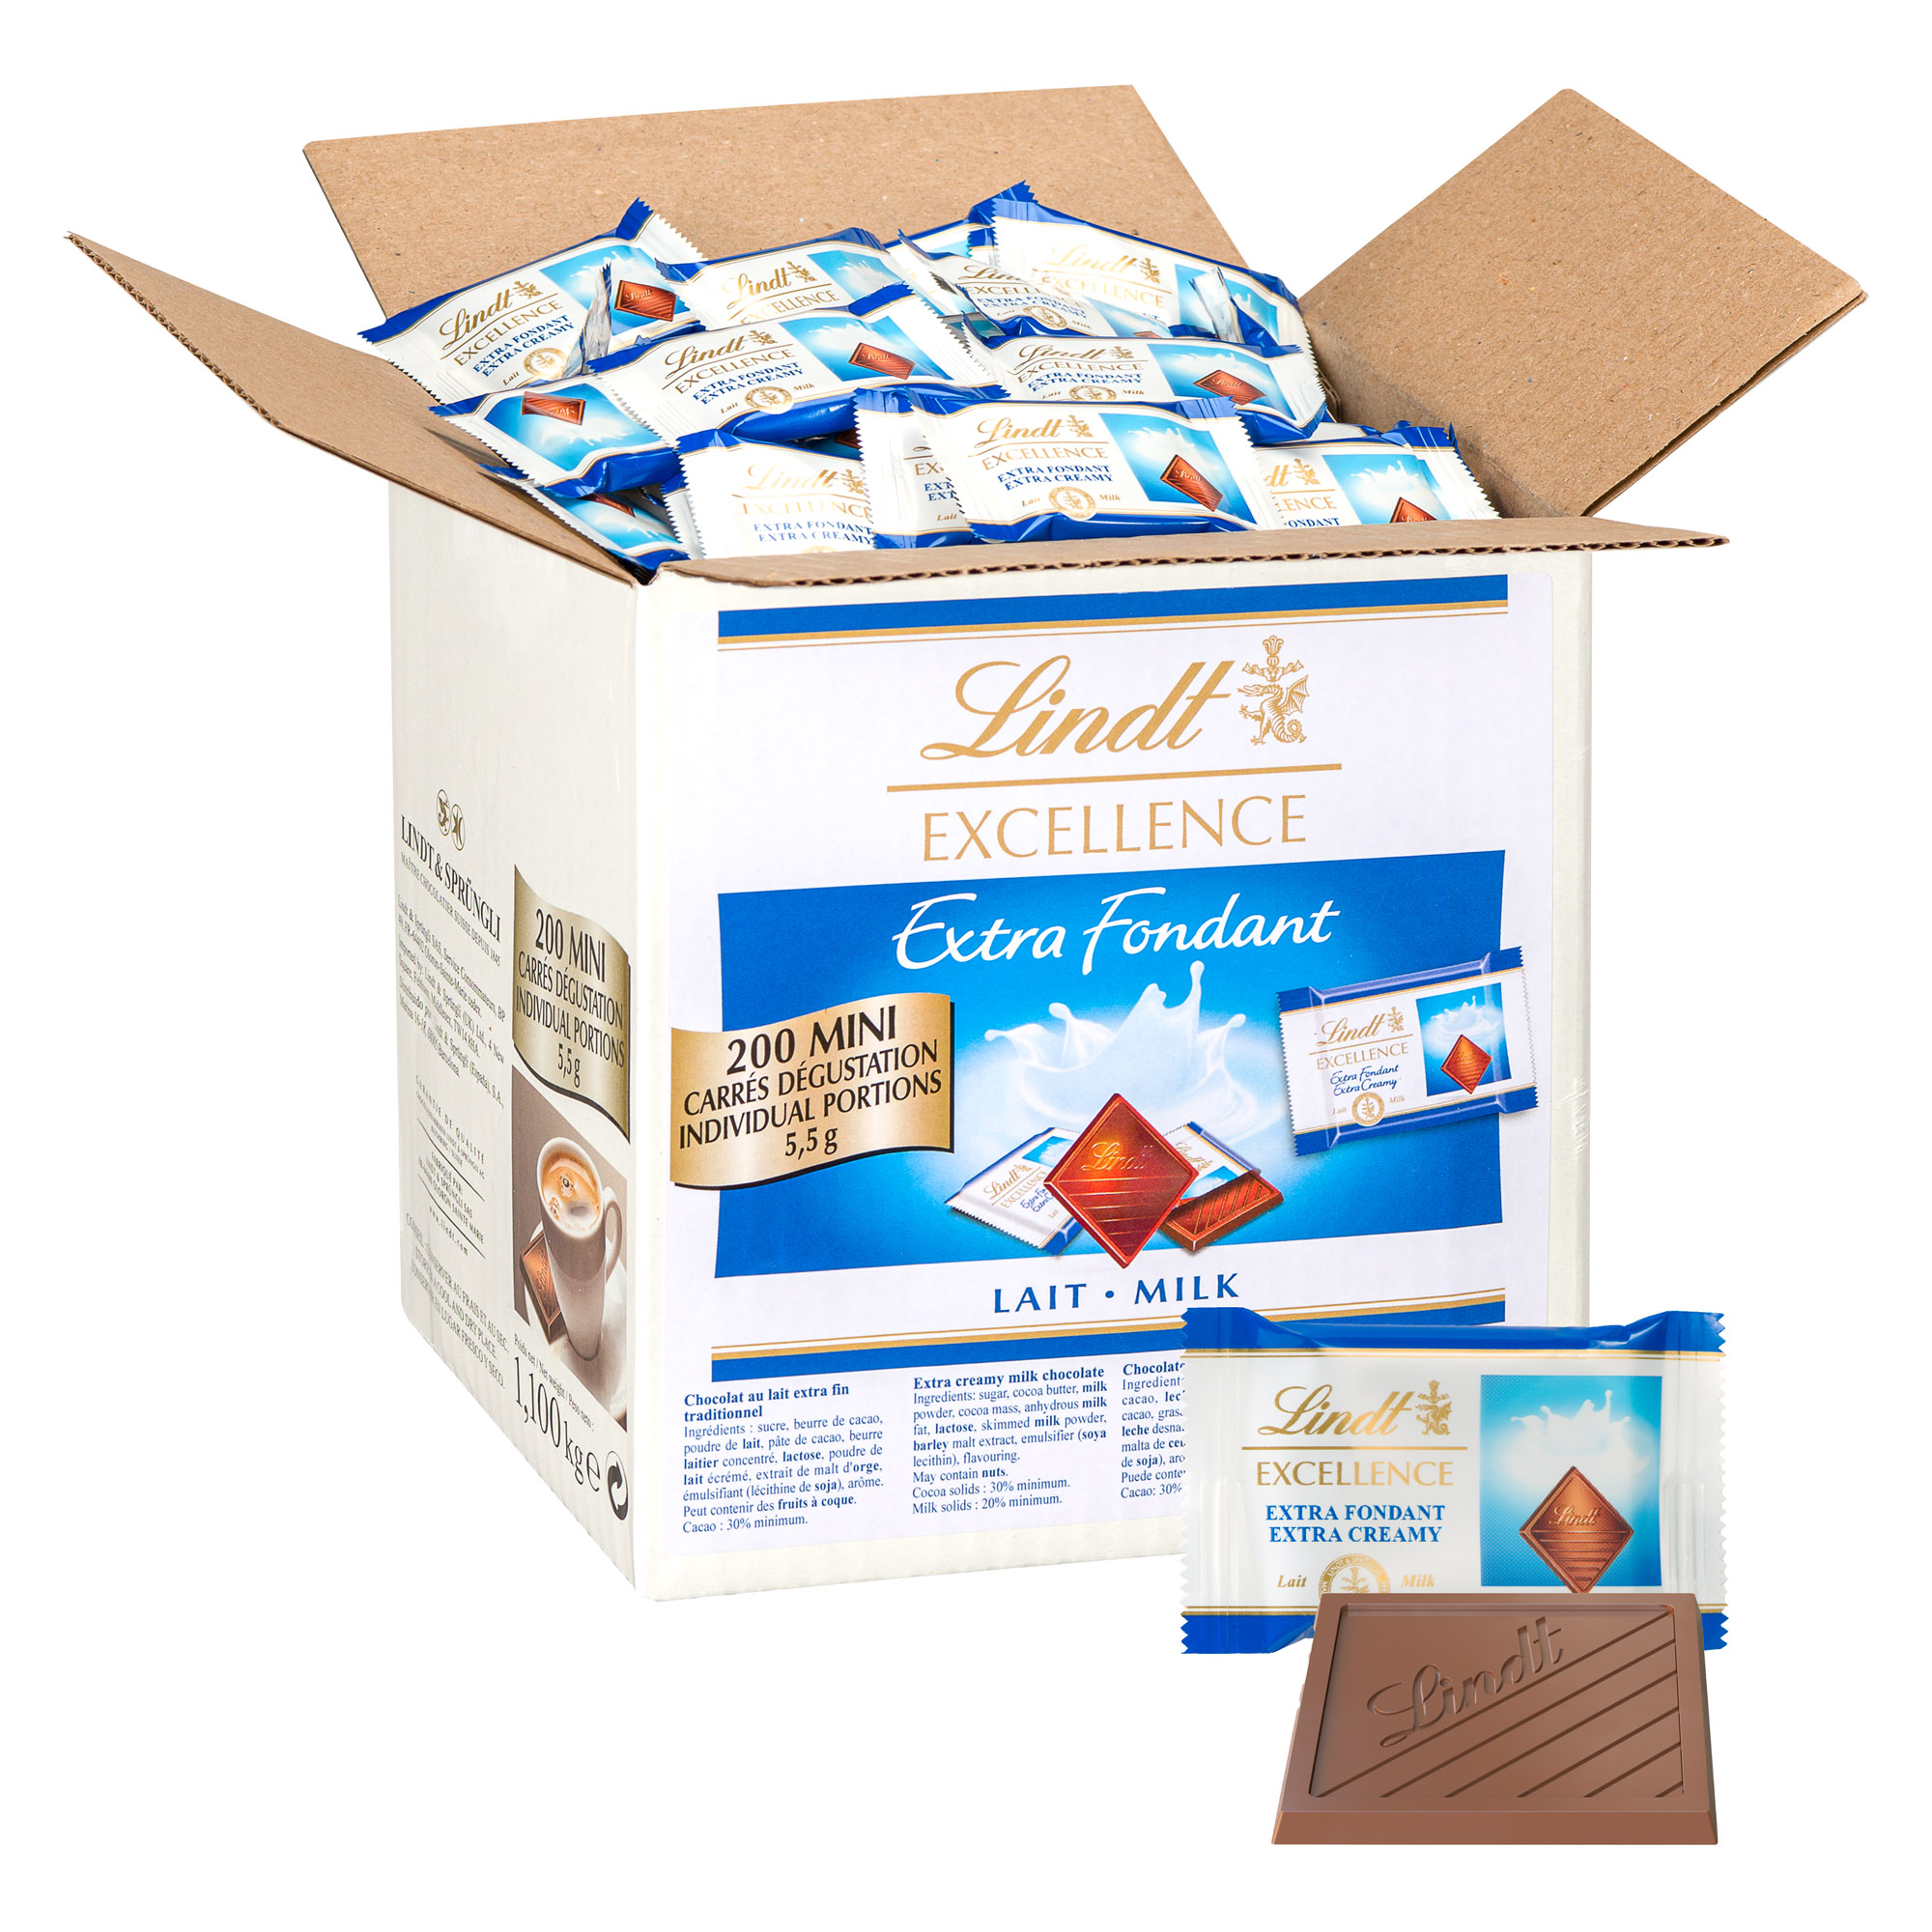 Napolitains chocolat au lait individuels Milka - Boîte de 1,7 kg - 355  pièces sur